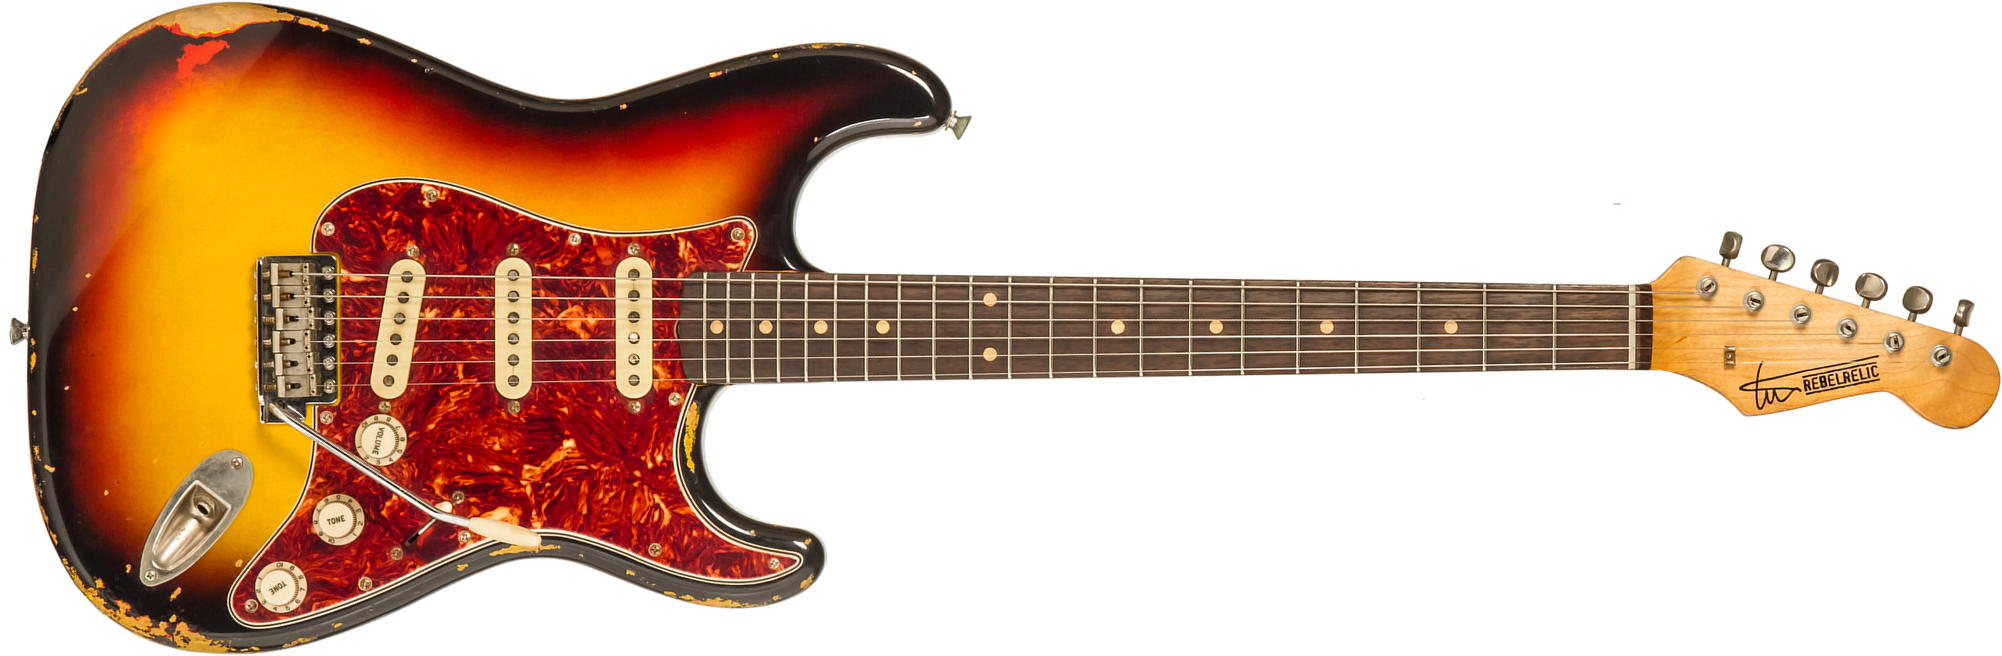 Rebelrelic S-series 1962 3s Trem Rw #231009 - 3-tone Sunburst - Elektrische gitaar in Str-vorm - Main picture